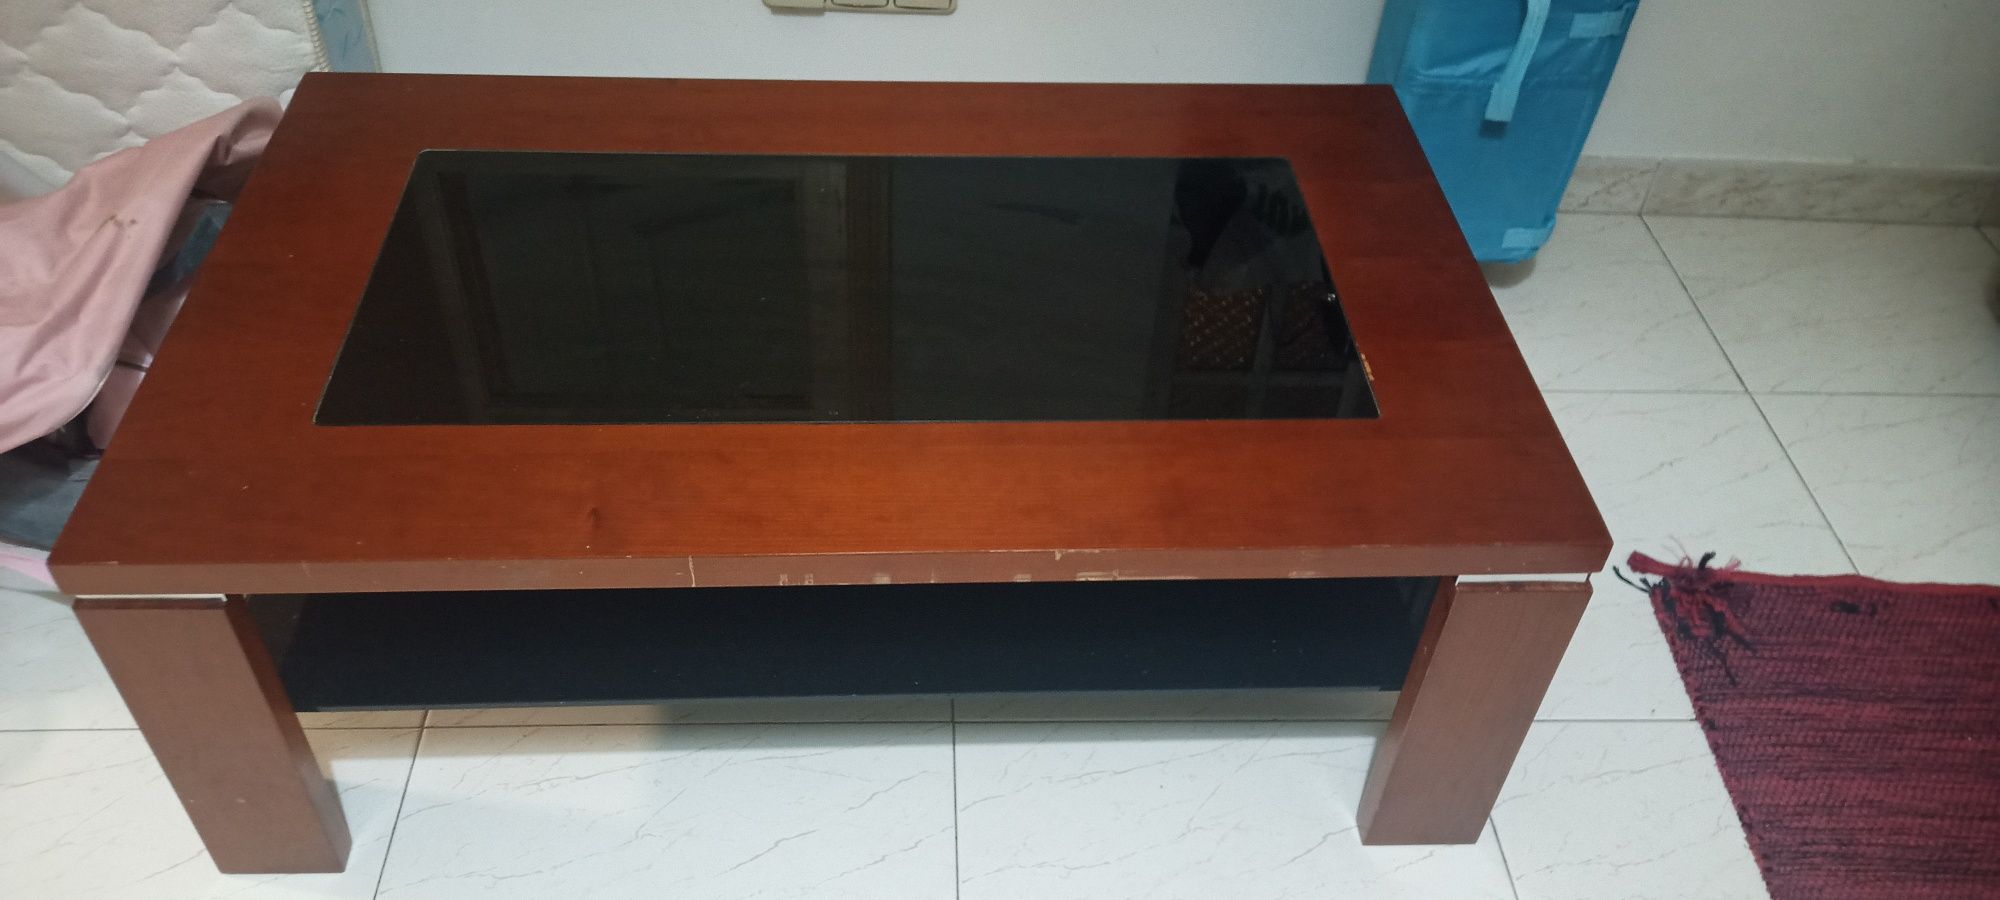 Mesa baixa de madeira e vidro temperado